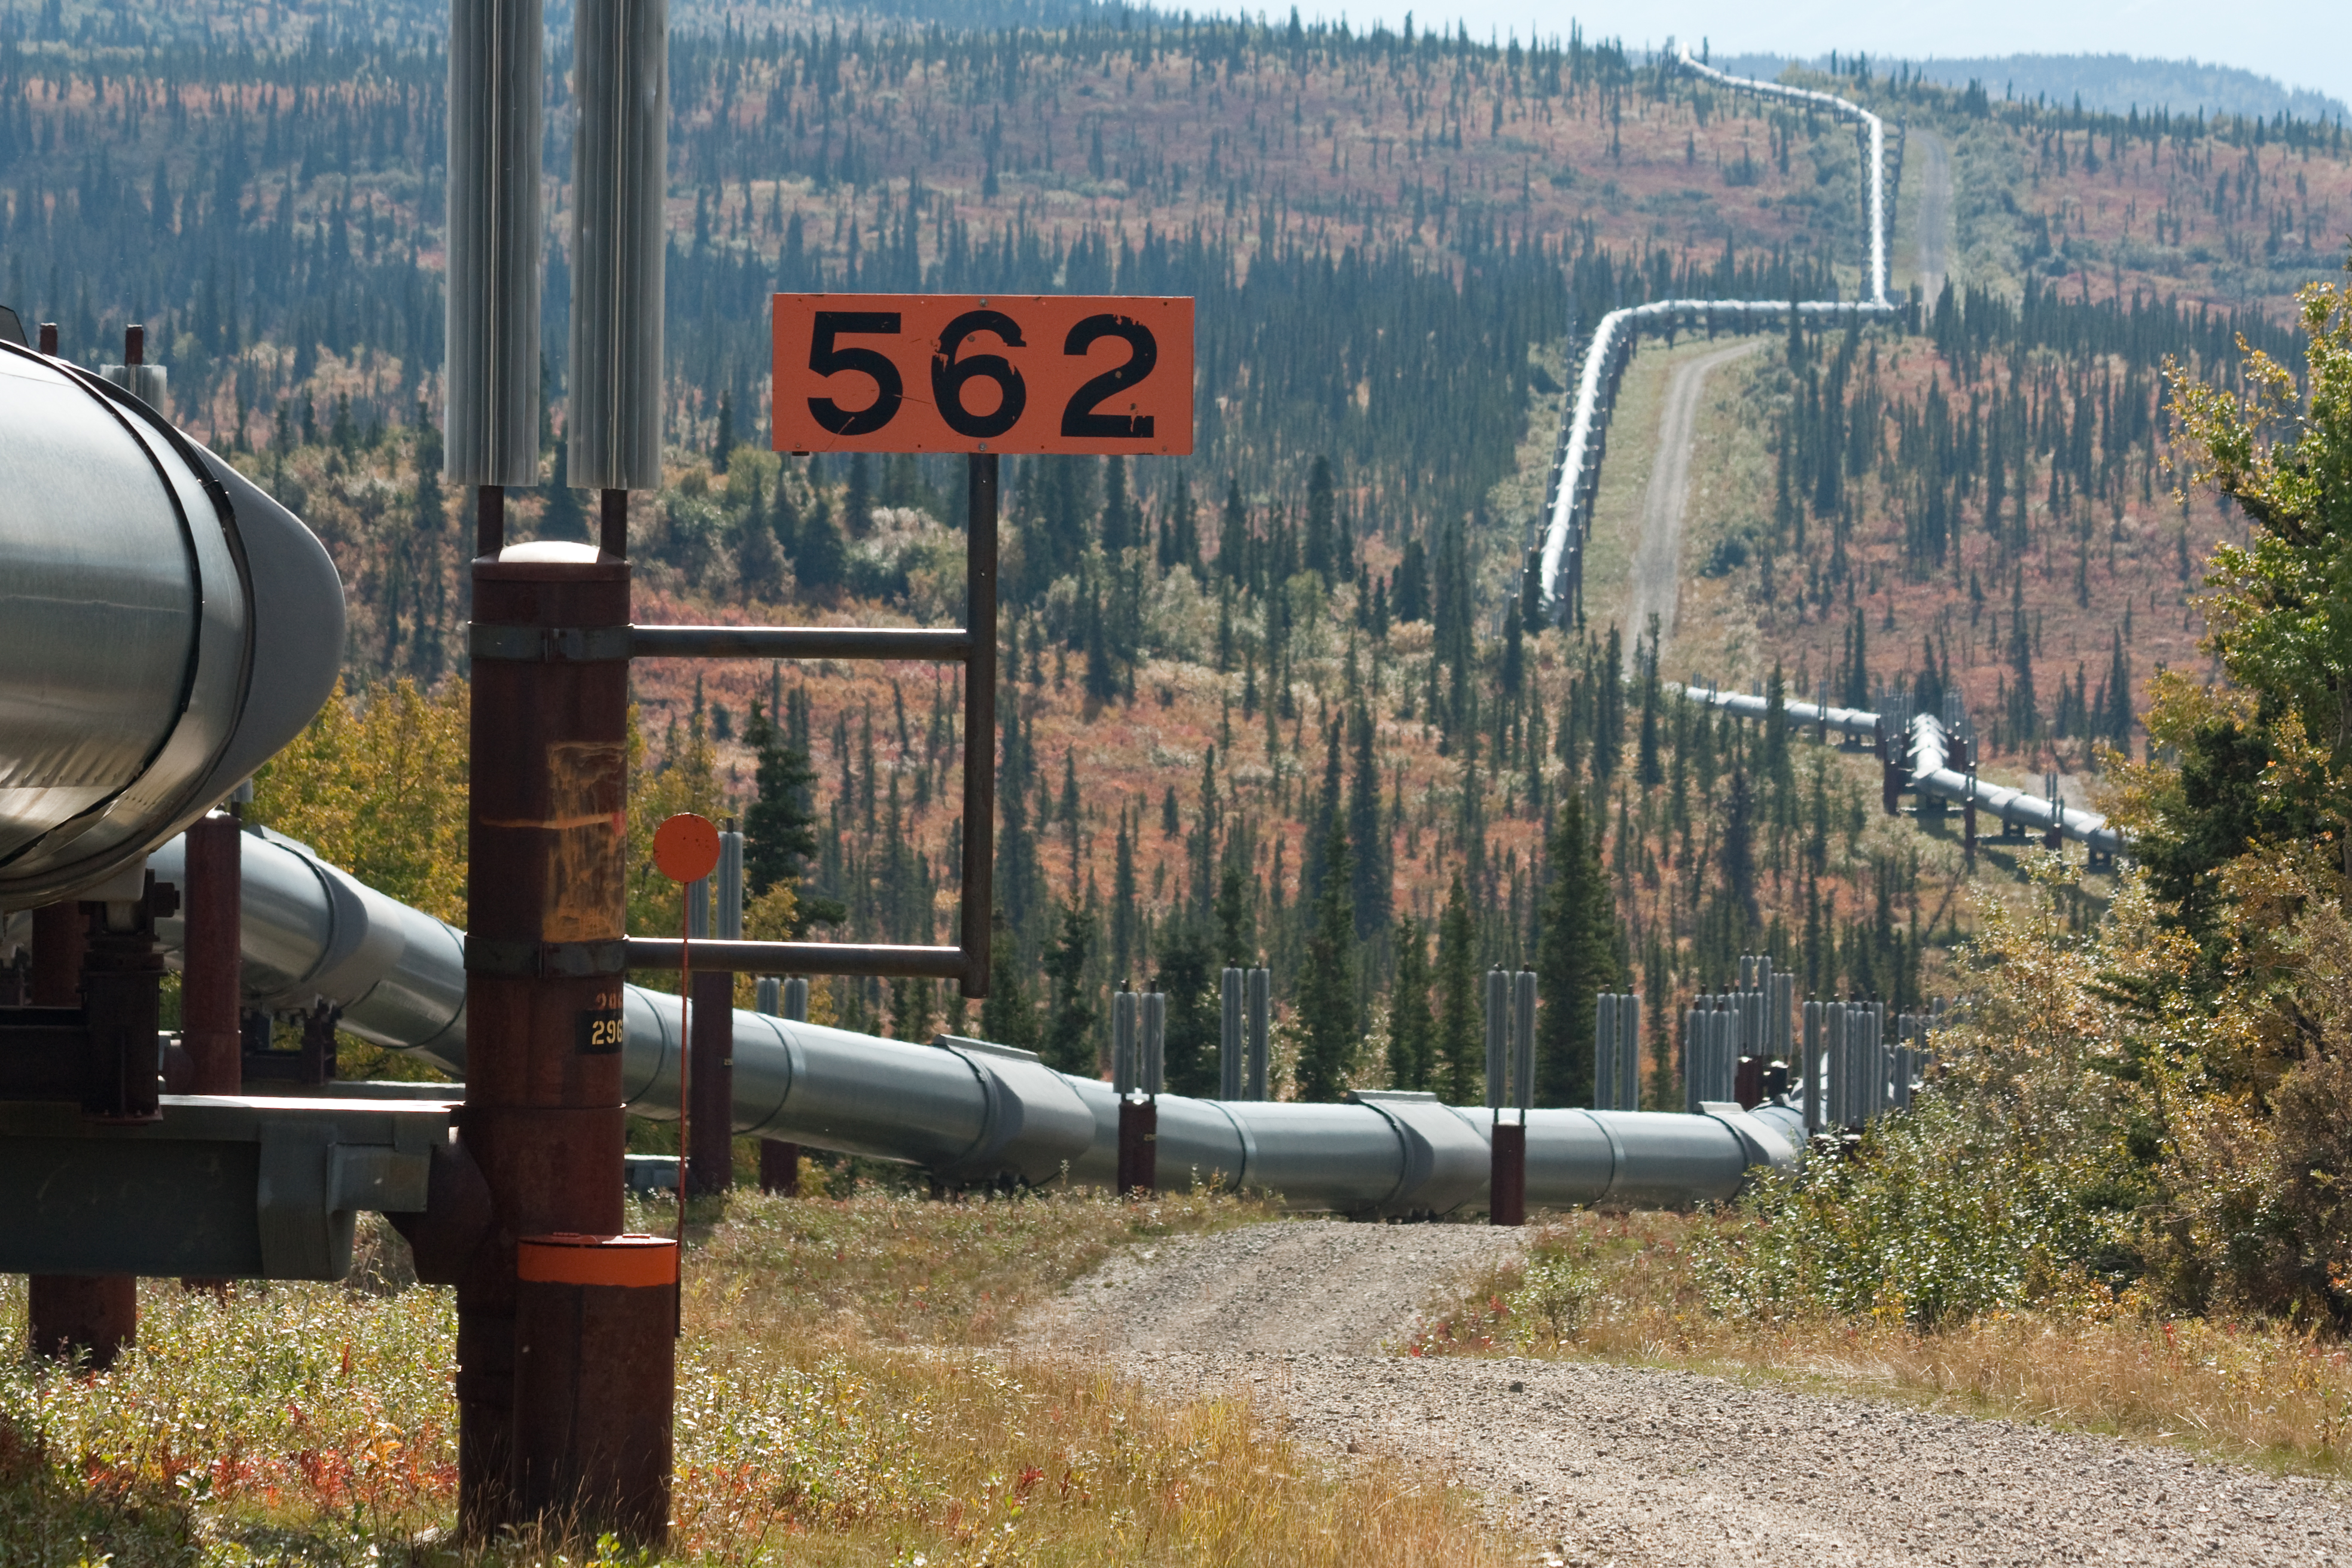 Alaska Pipeline by Dan / CC BY